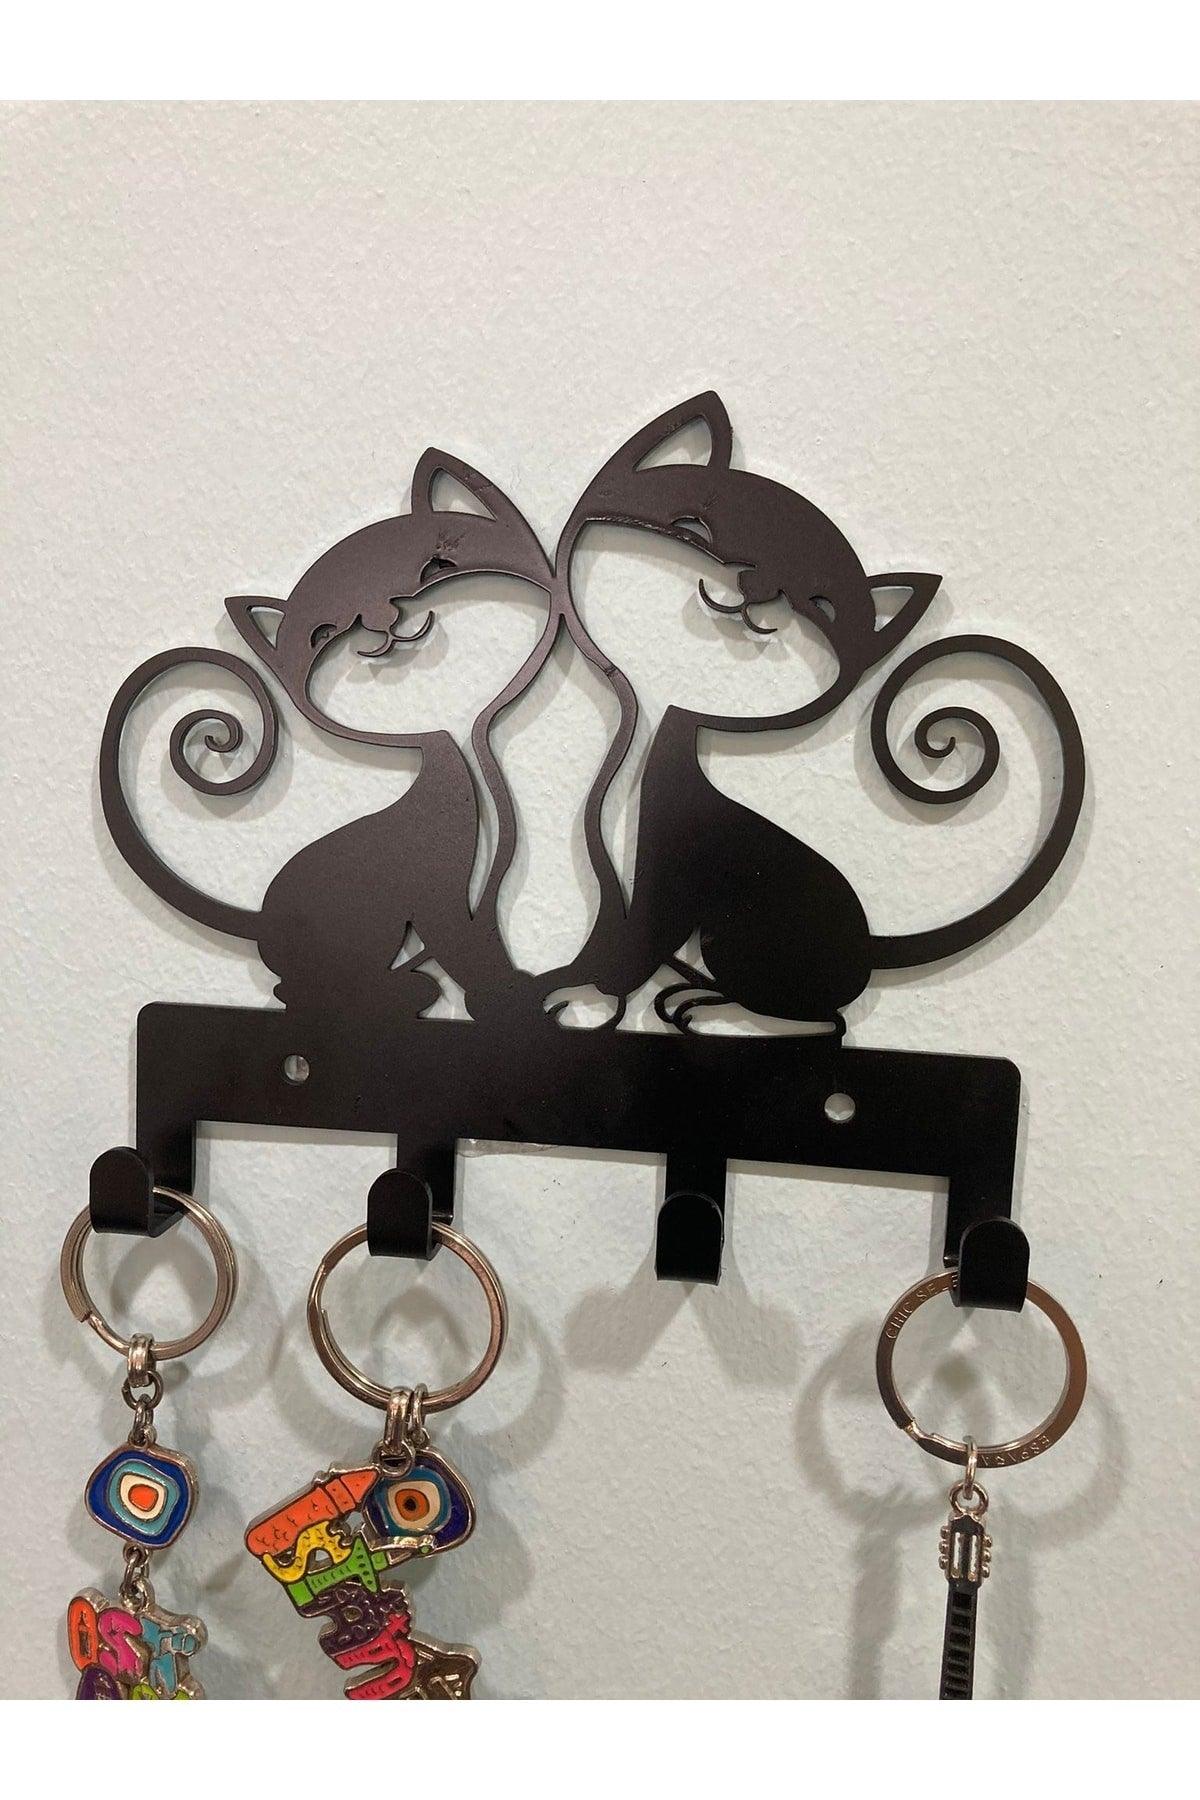 (cat) Metal Key Holder - Decorative Key Holder - Swordslife